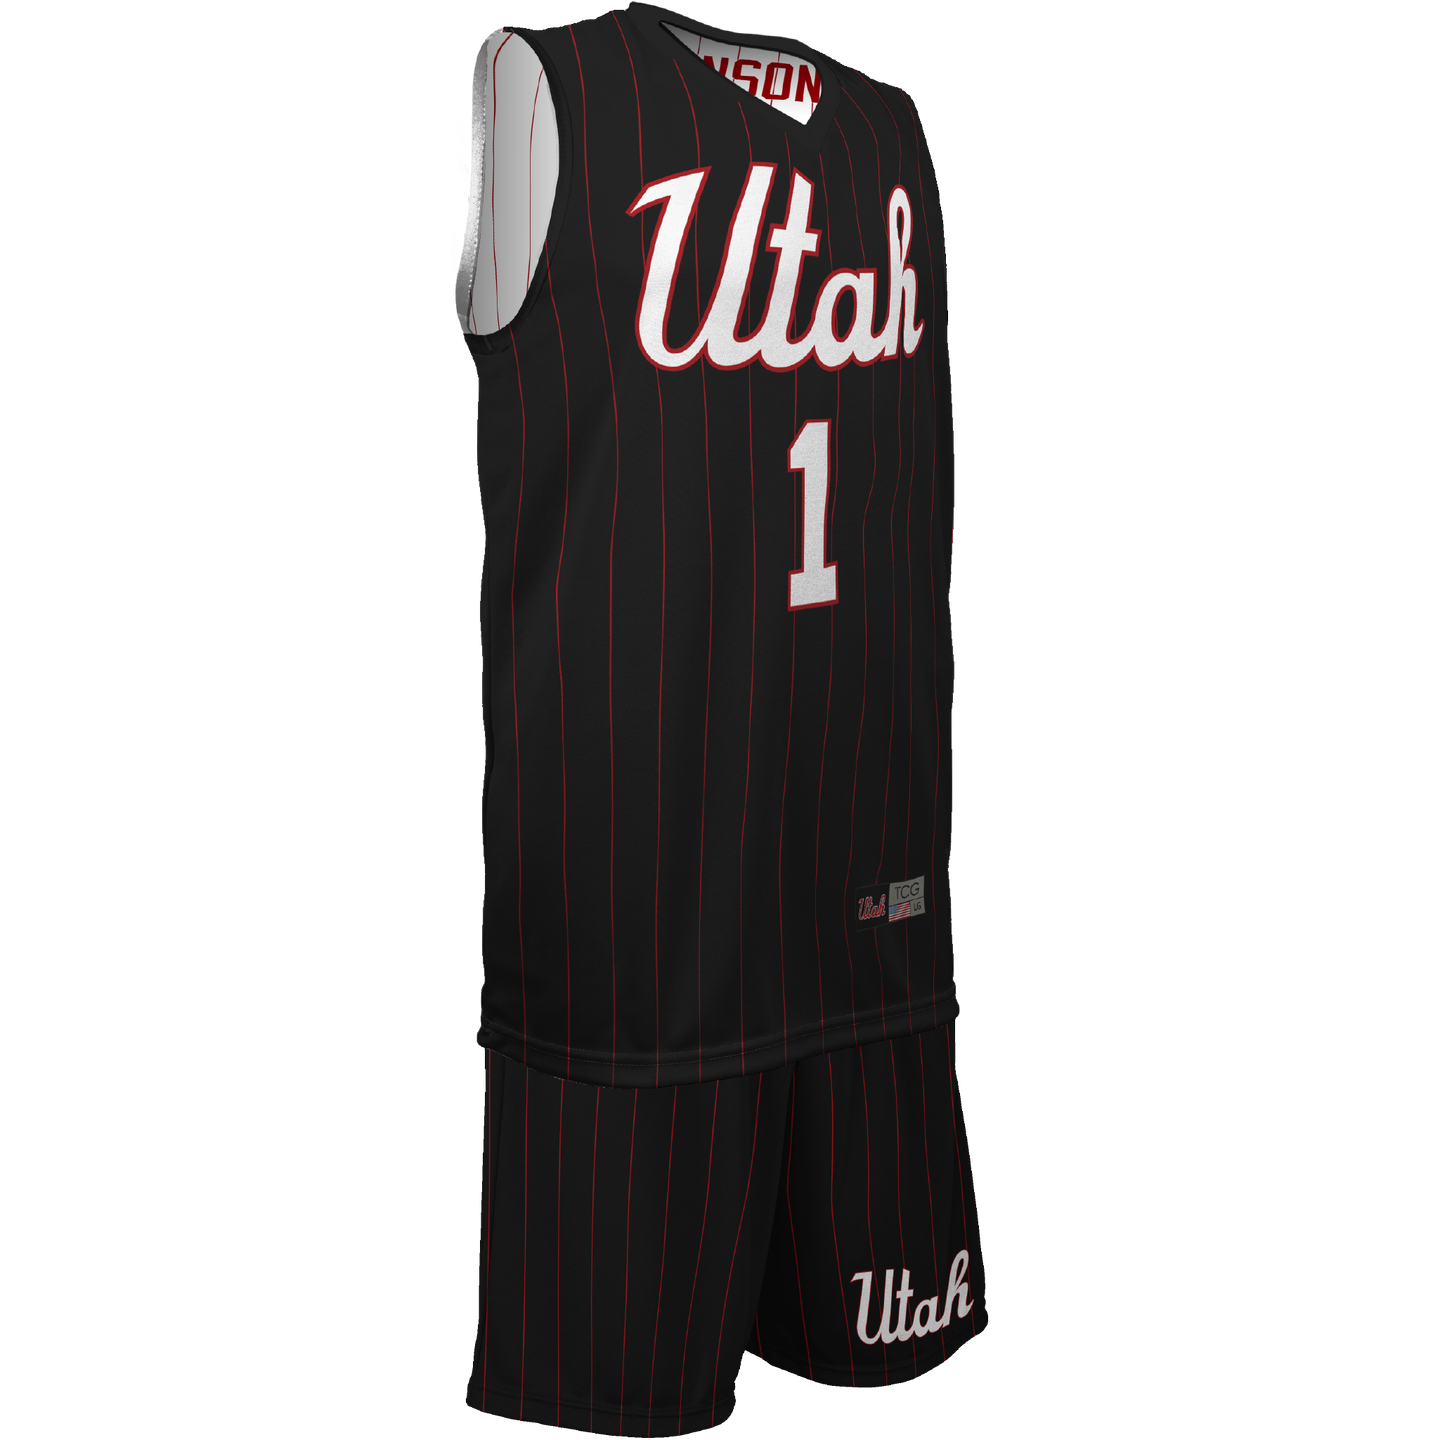 Men's Team Utah Reversible Game Uniform